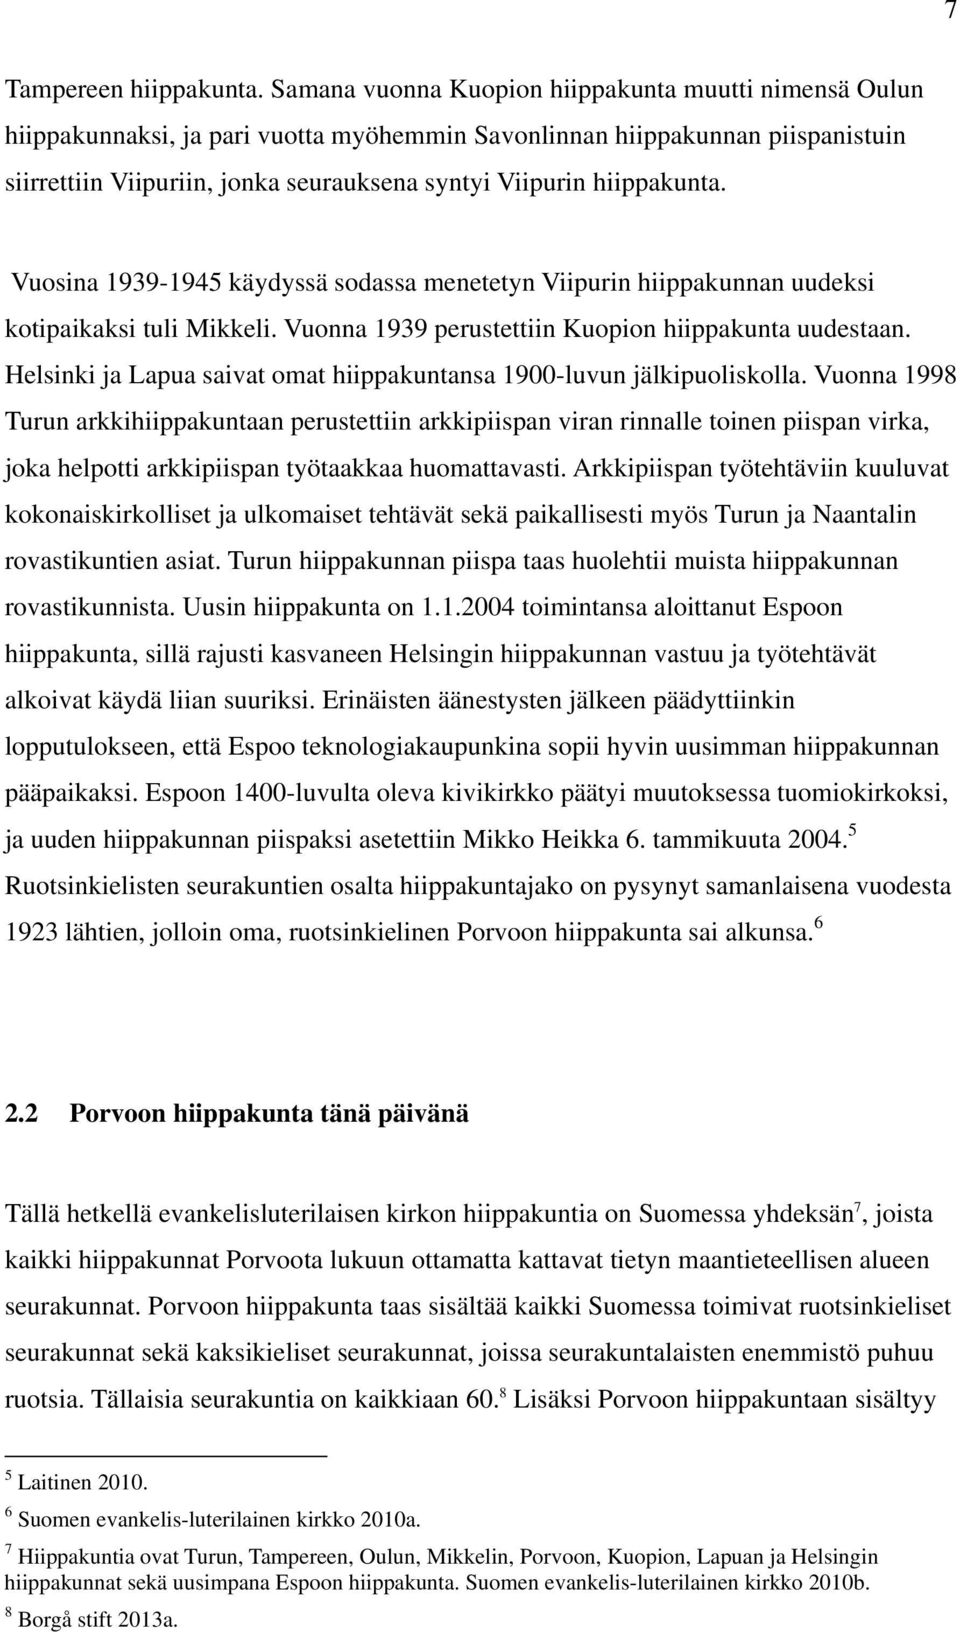 hiippakunta. Vuosina 1939-1945 käydyssä sodassa menetetyn Viipurin hiippakunnan uudeksi kotipaikaksi tuli Mikkeli. Vuonna 1939 perustettiin Kuopion hiippakunta uudestaan.